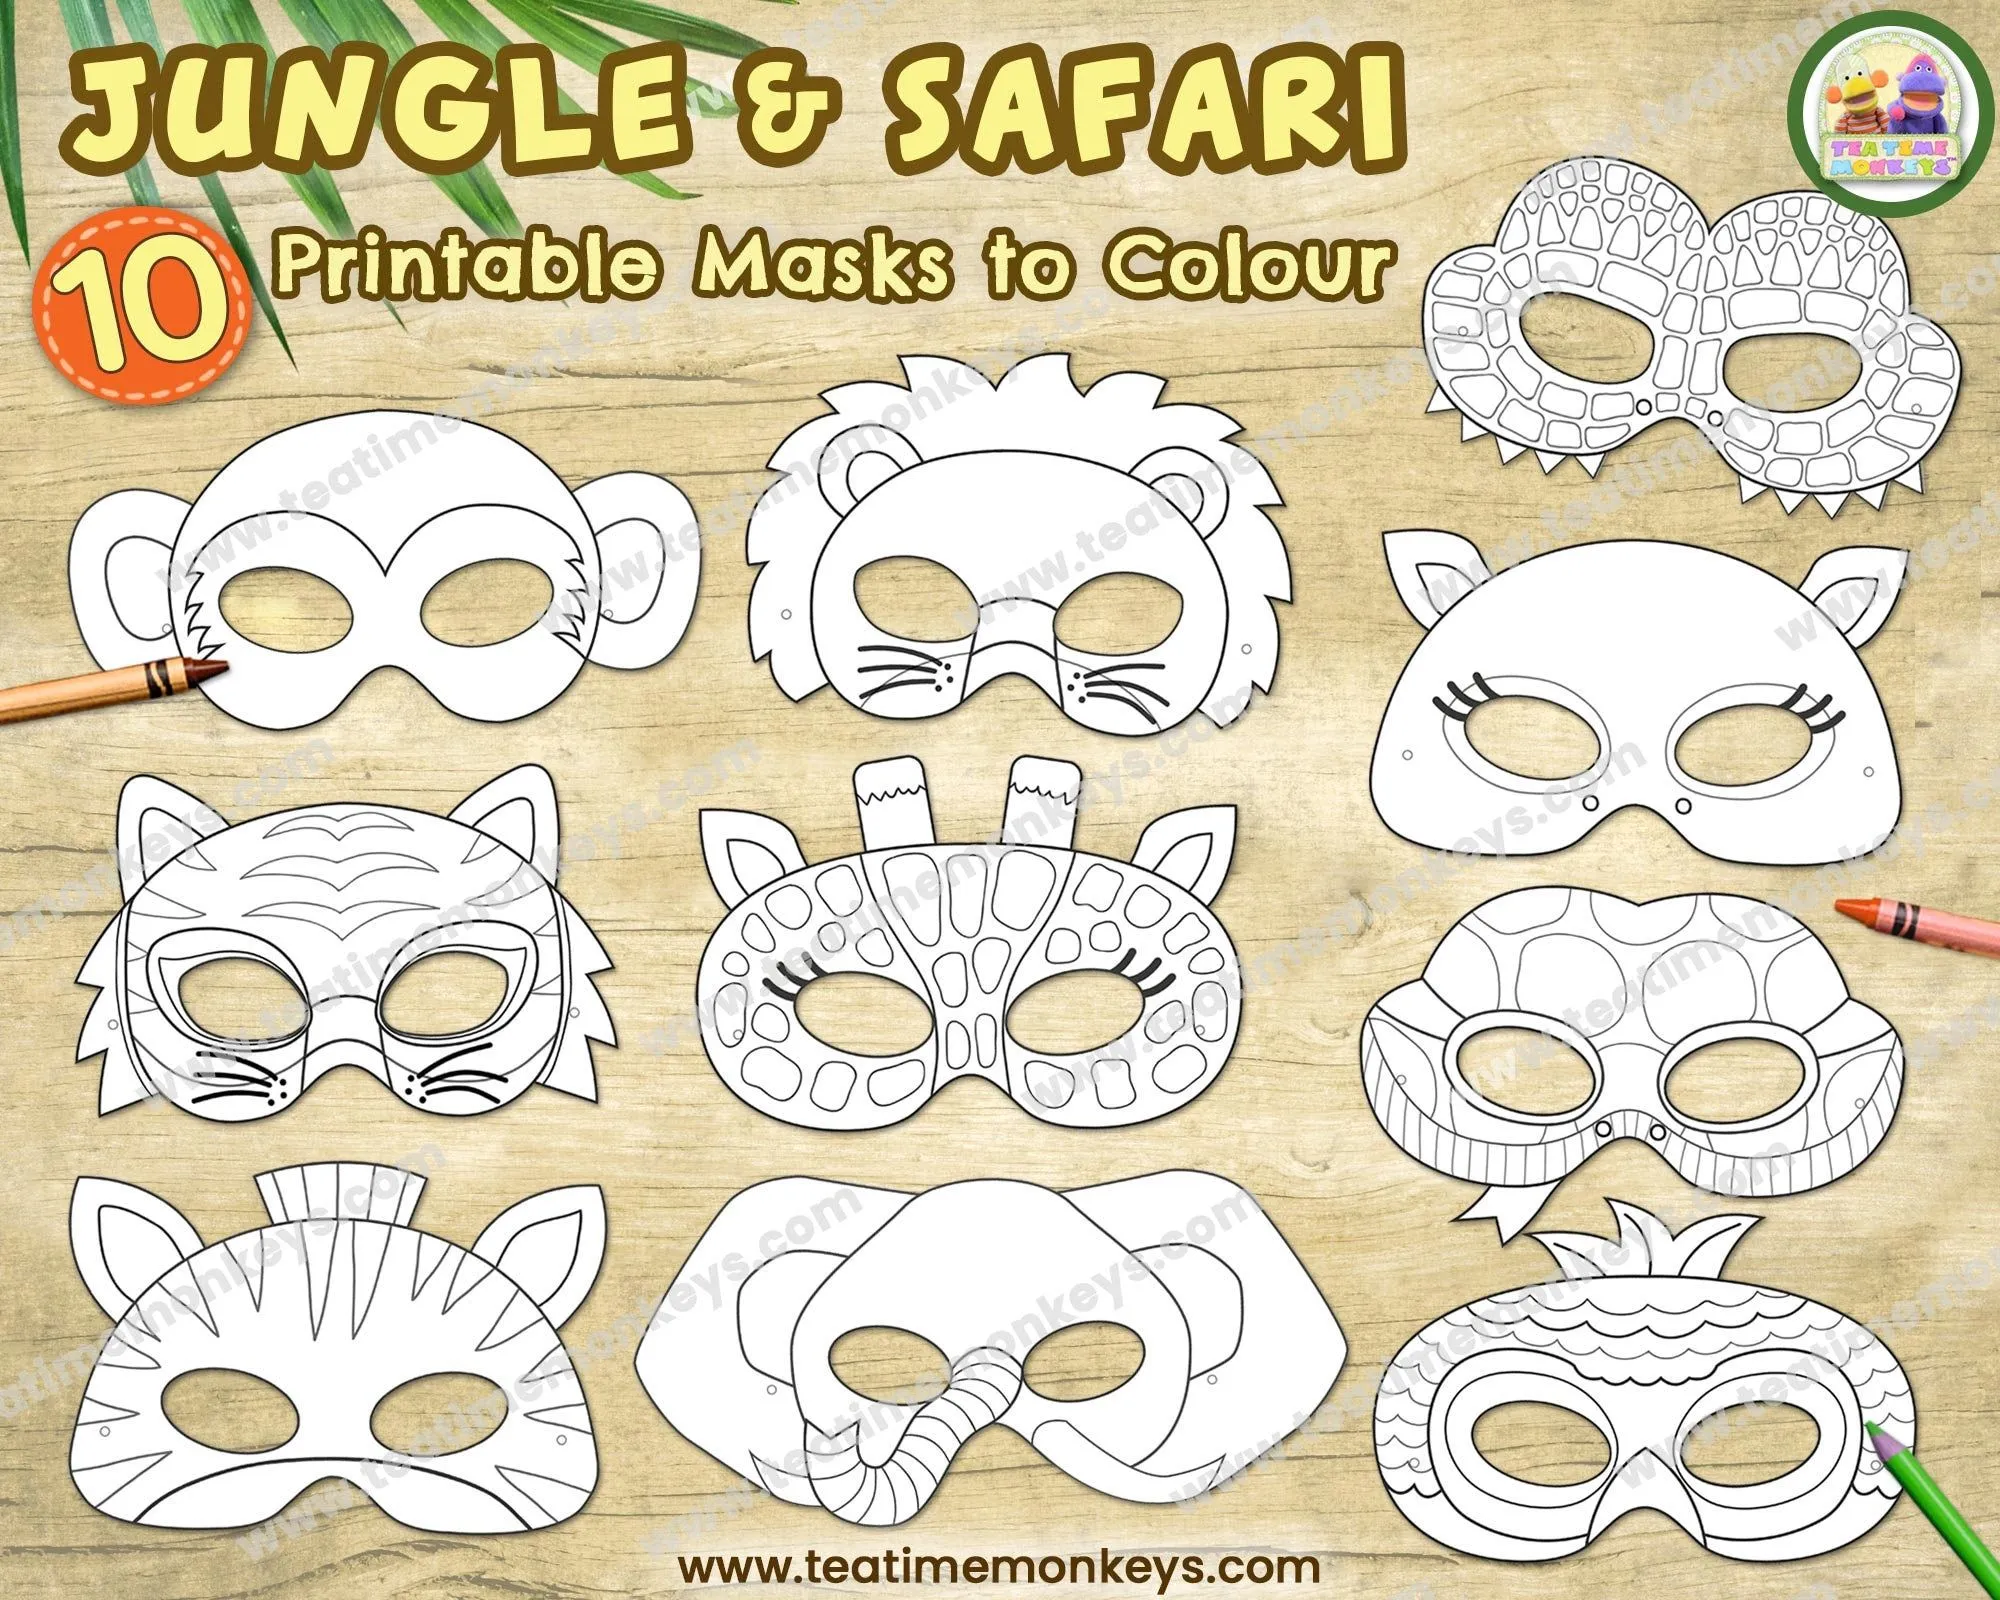 Máscara de safari - Etsy México